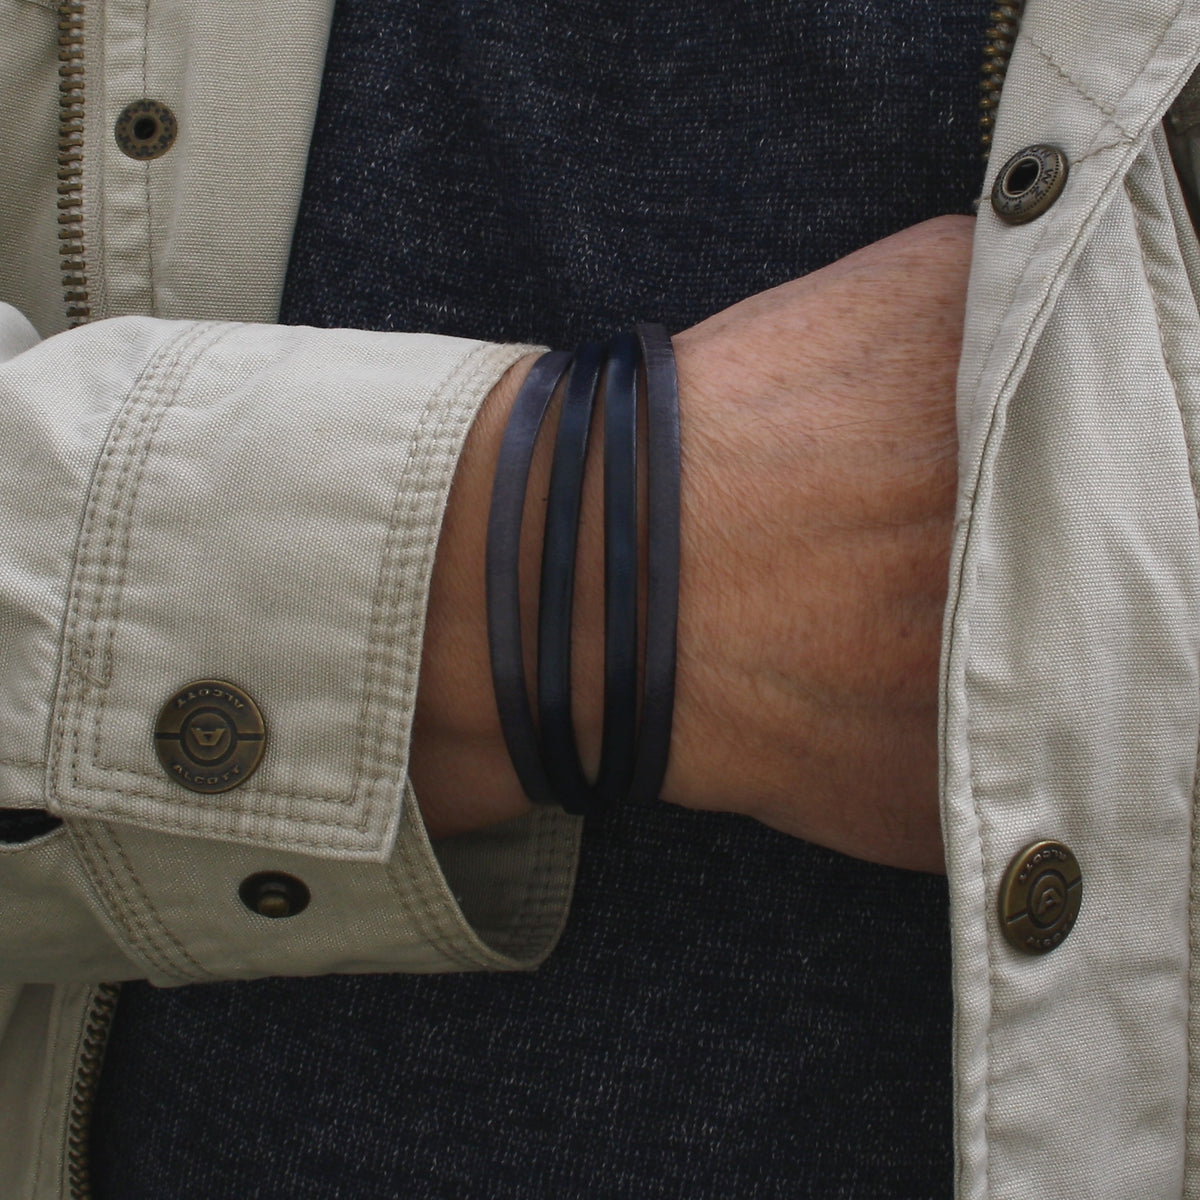 Herren-Leder-Armband-Twist-grau-navy-flach-Edelstahlverschluss-getragen-wavepirate-shop-1